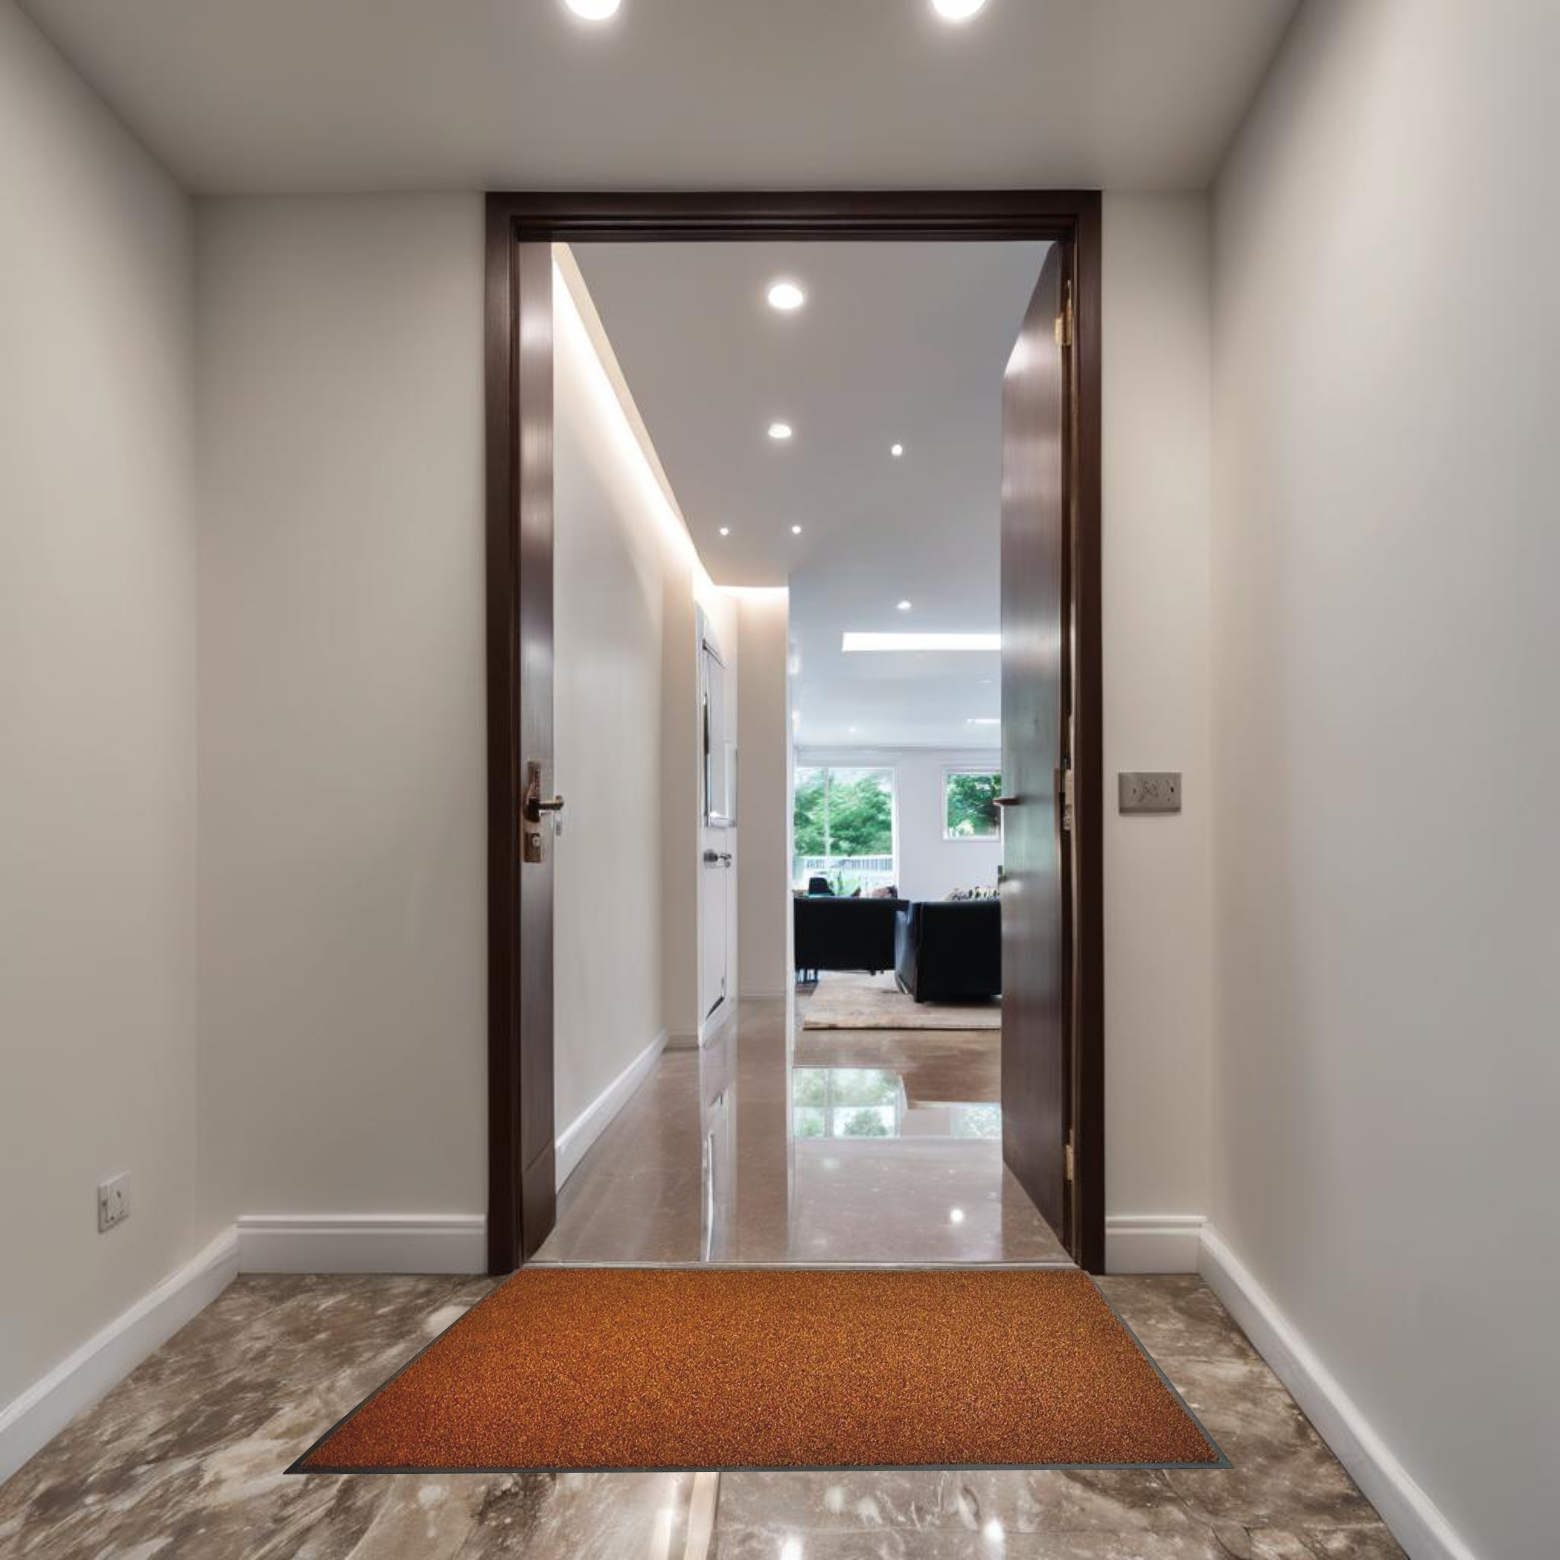 UltiScrape barrier mat brown at door hallway